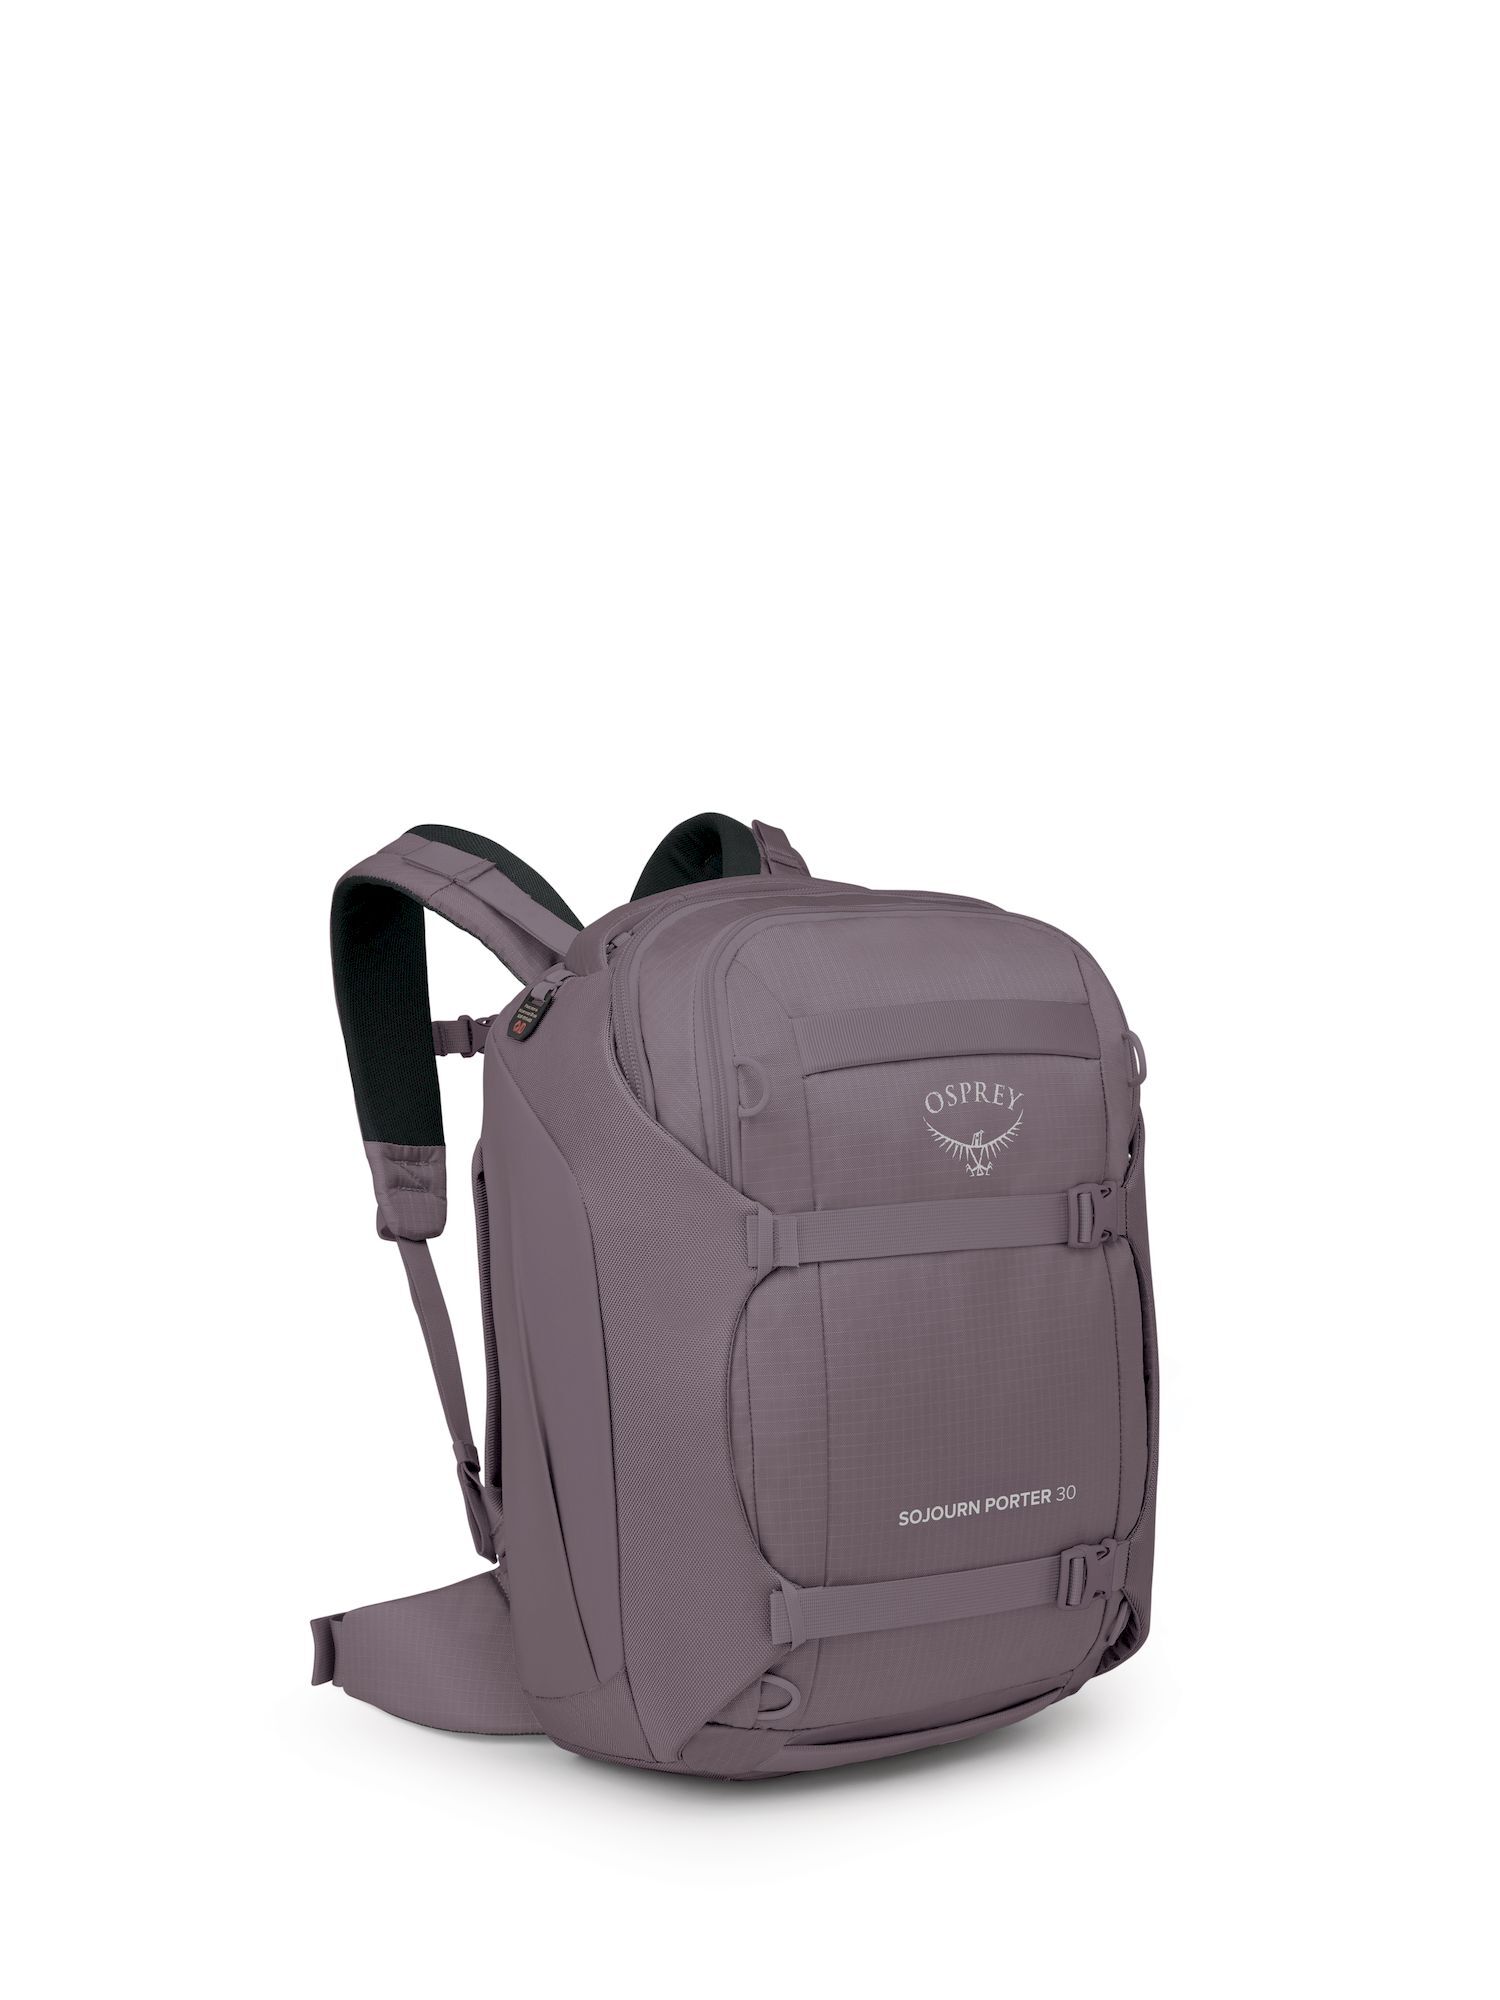 Osprey Sojourn Porter 30 - Travel backpack | Hardloop